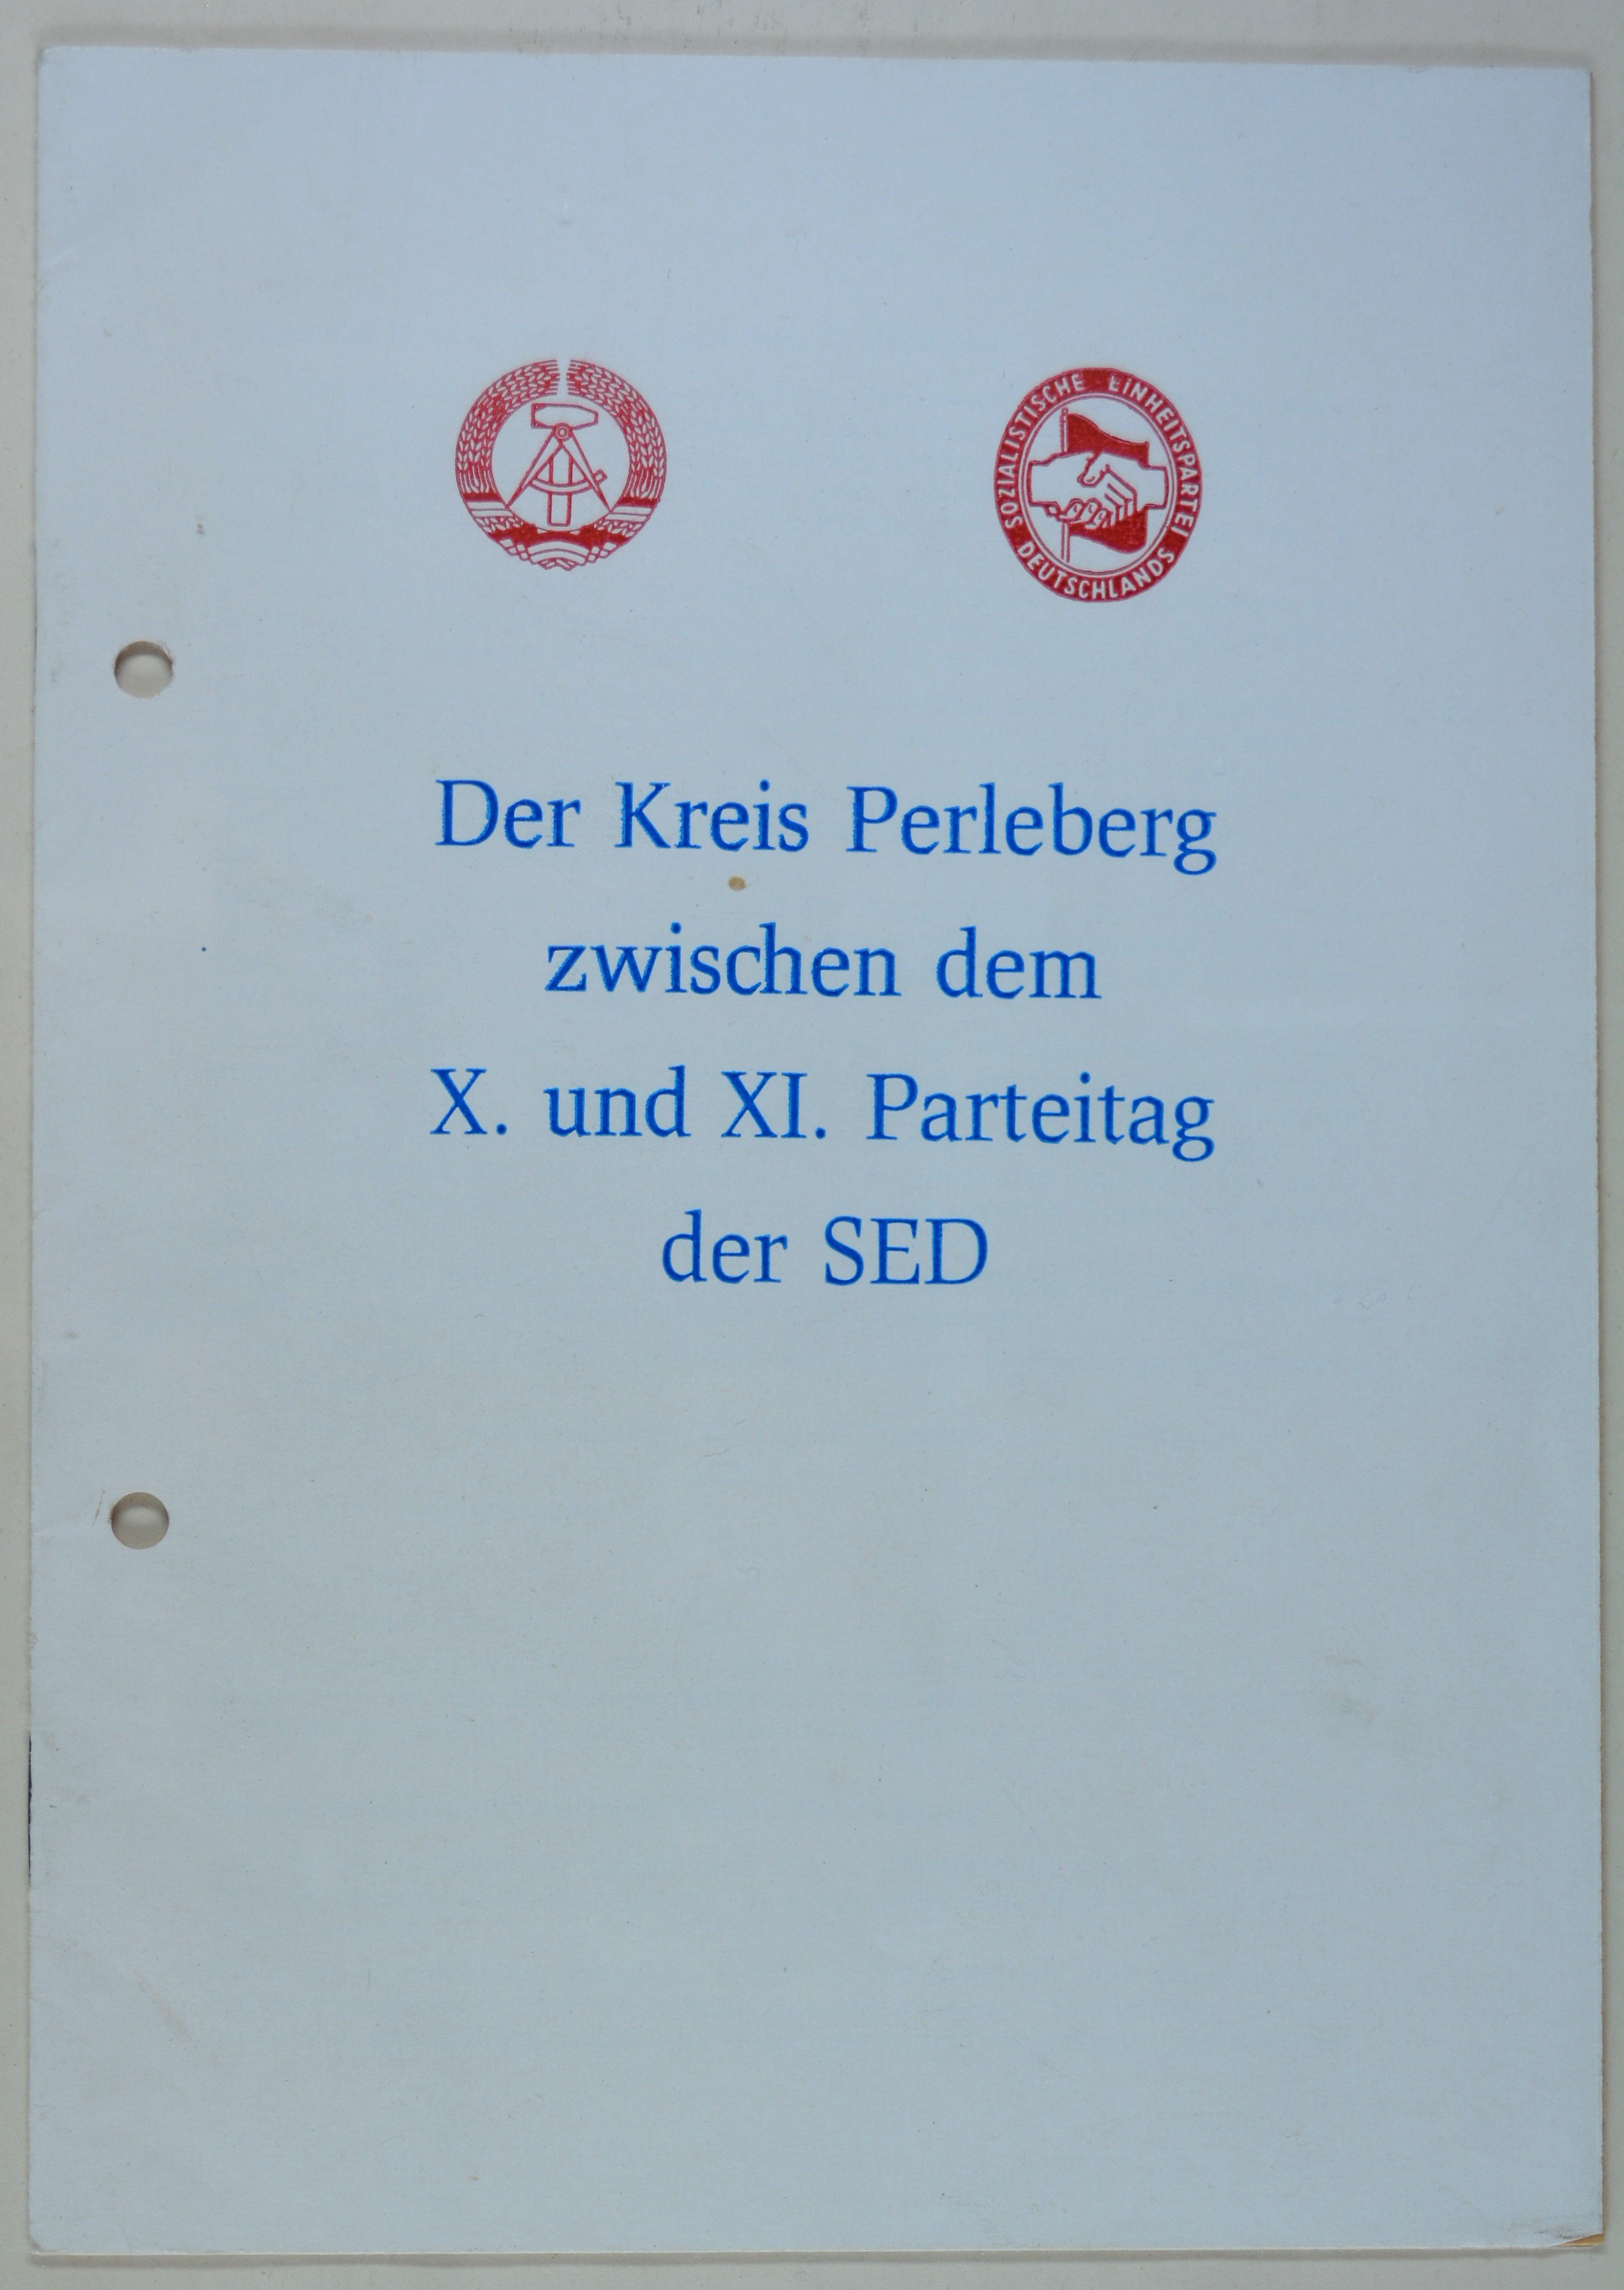 Broschüre: Parteiarbeit der SED Perleberg (DDR Geschichtsmuseum im Dokumentationszentrum Perleberg CC BY-SA)